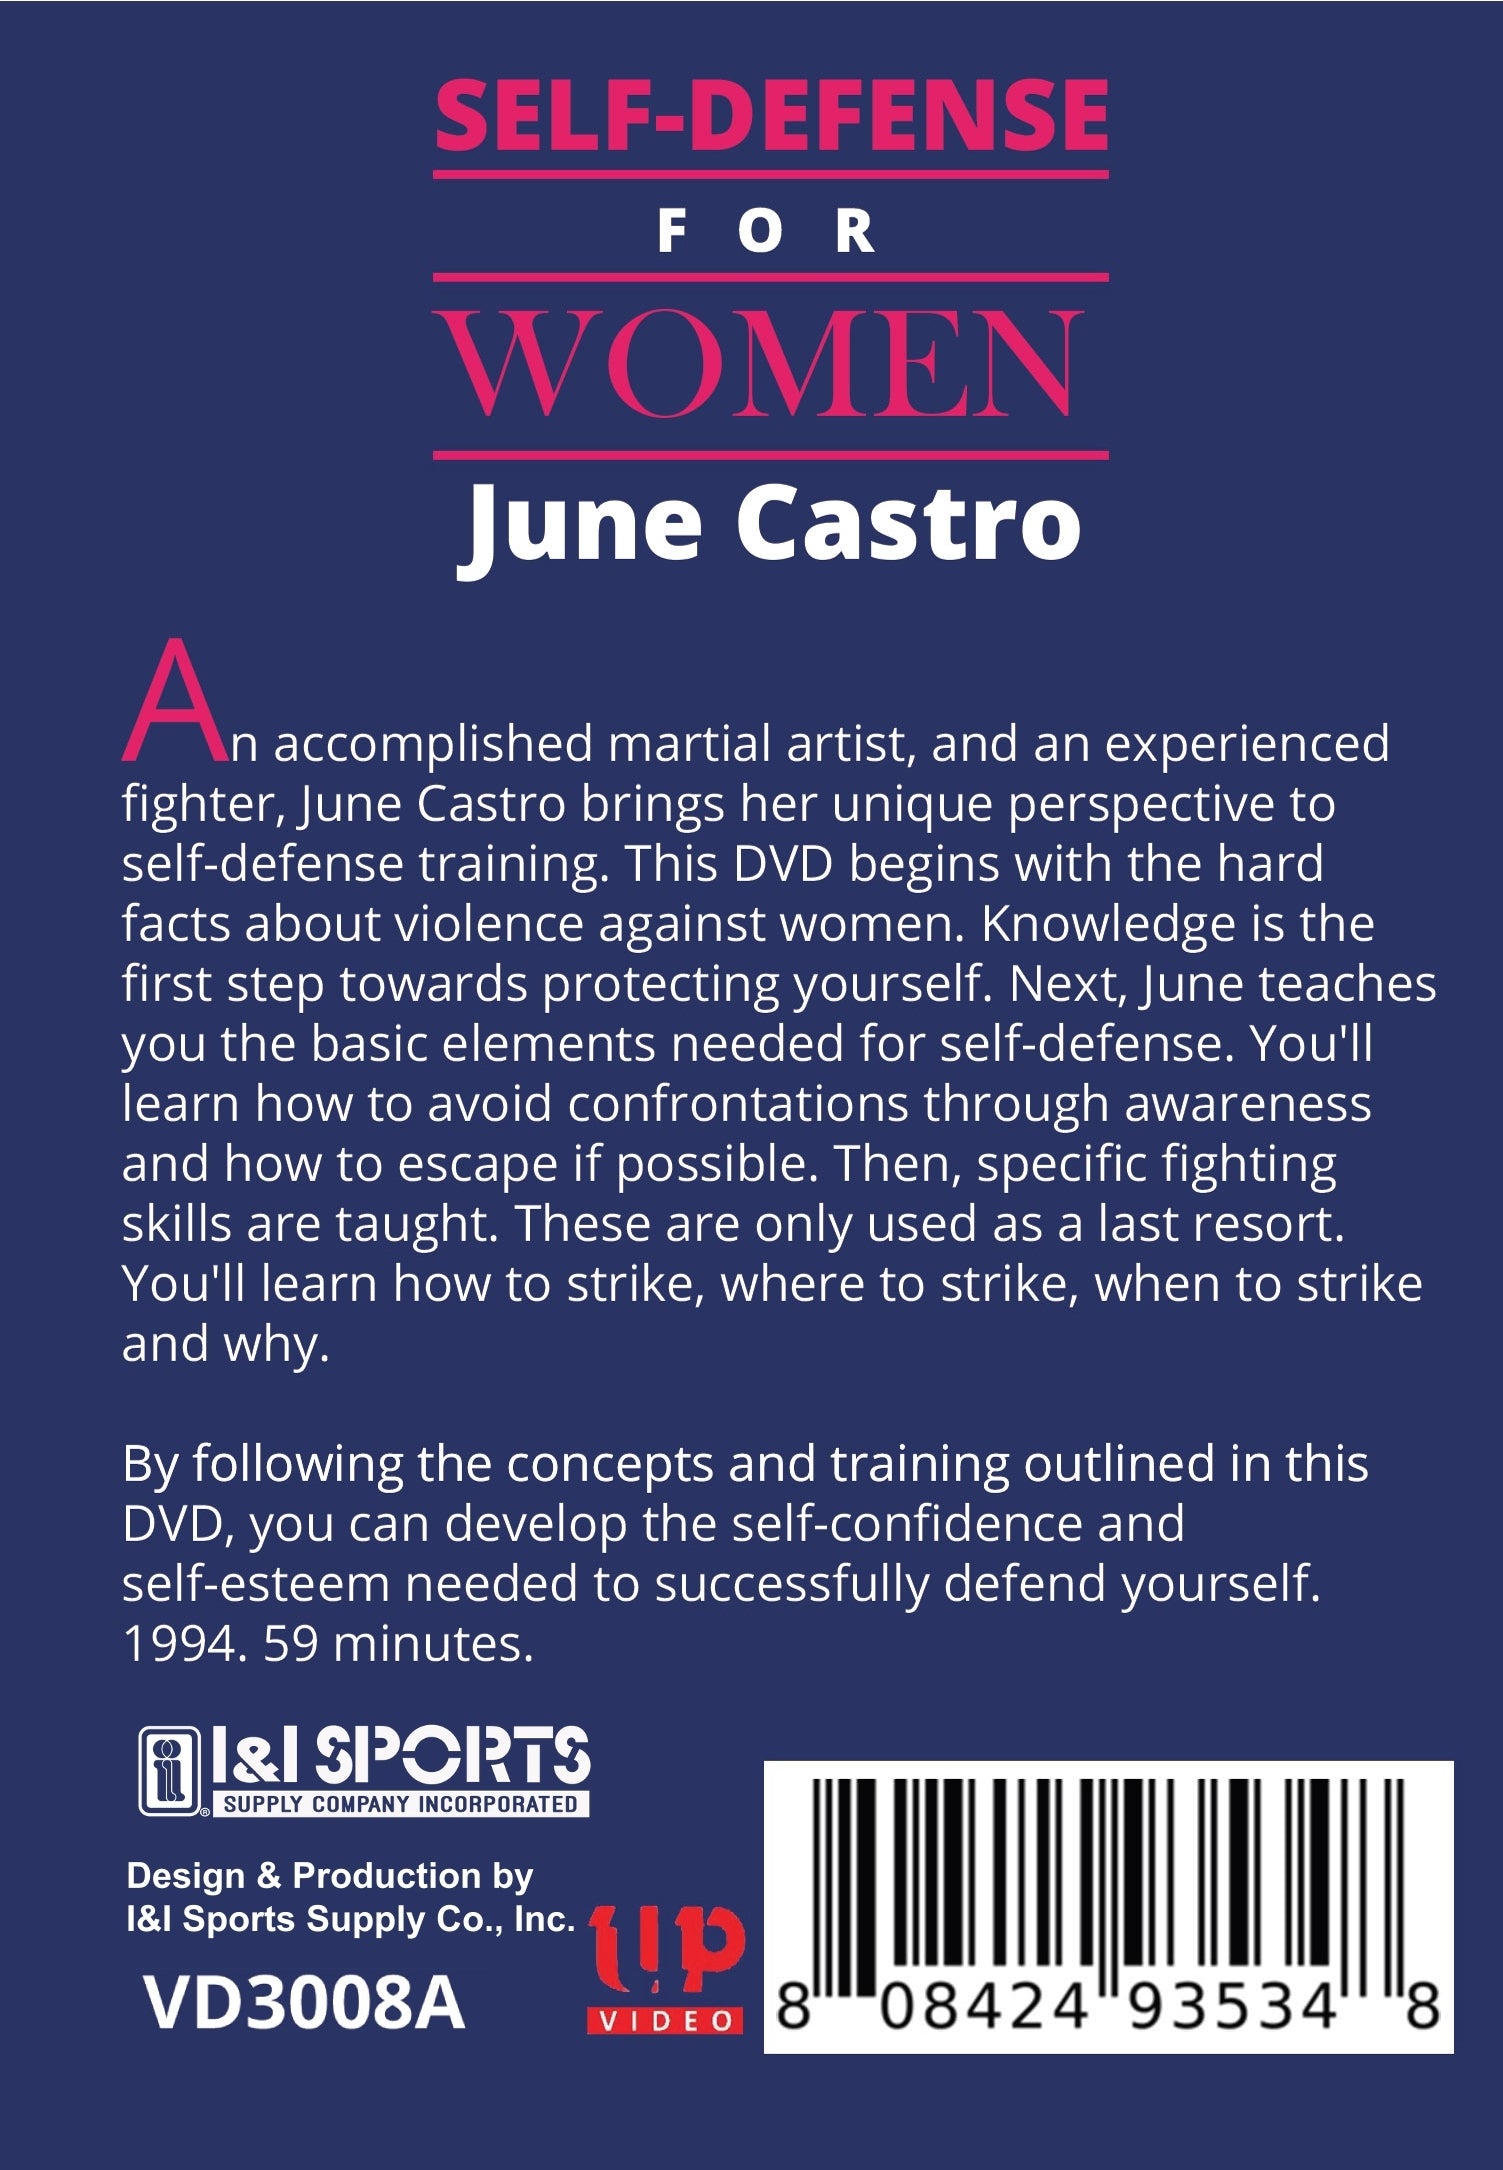 Self Defense for Women Girls DVD June Castro kali jeet kune do martial arts